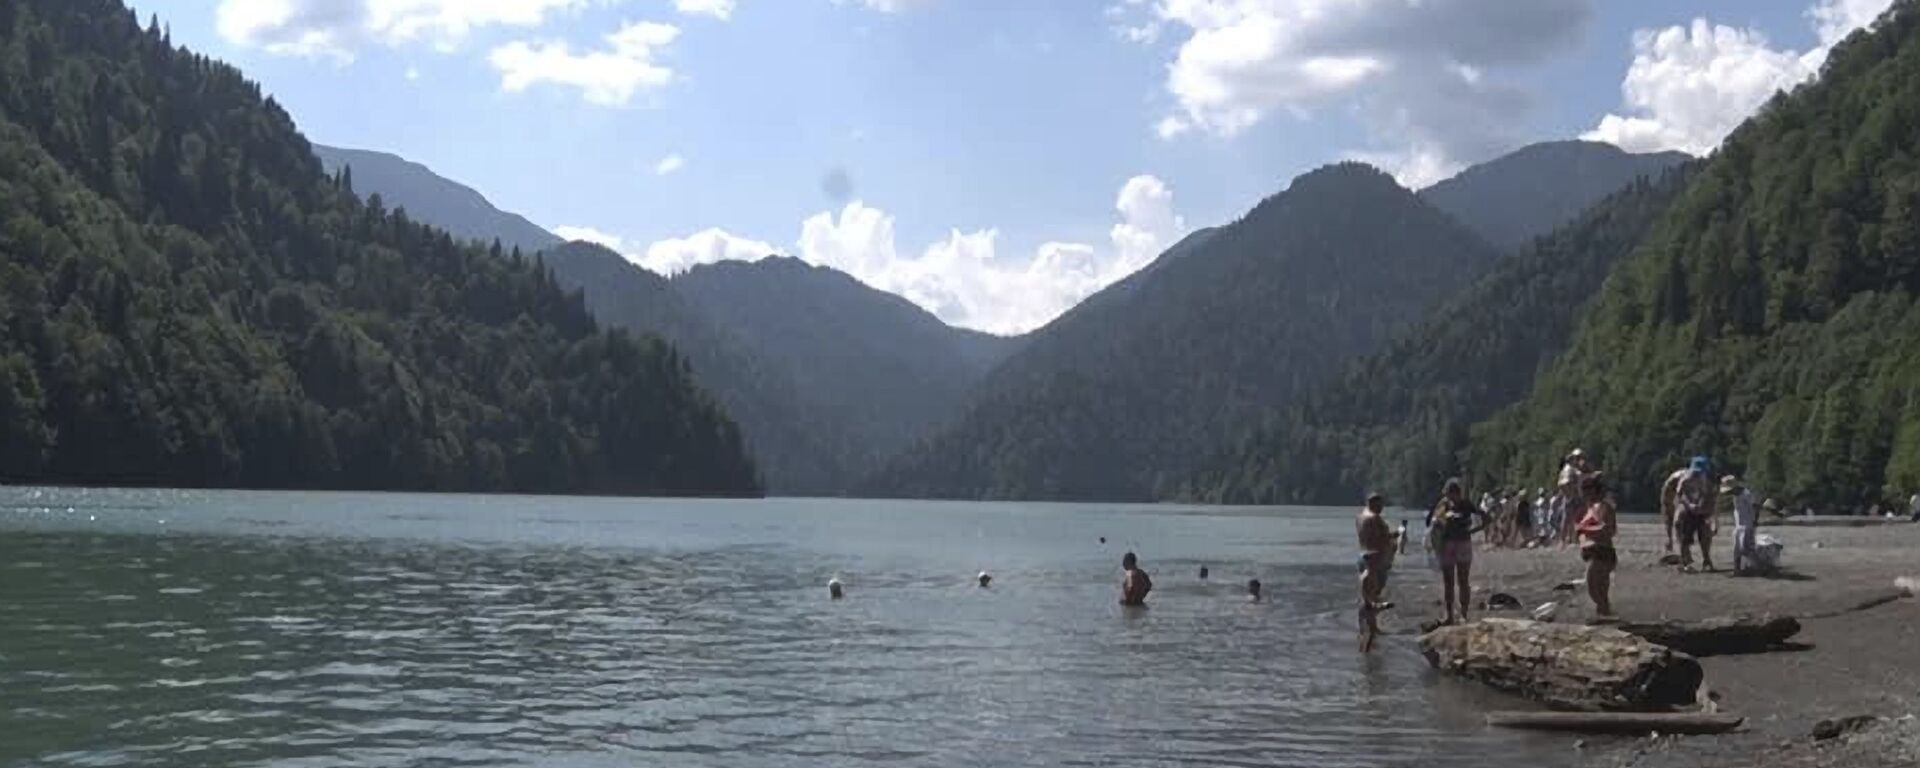 Туристы купаются в озере Рица  - Sputnik Абхазия, 1920, 09.08.2021